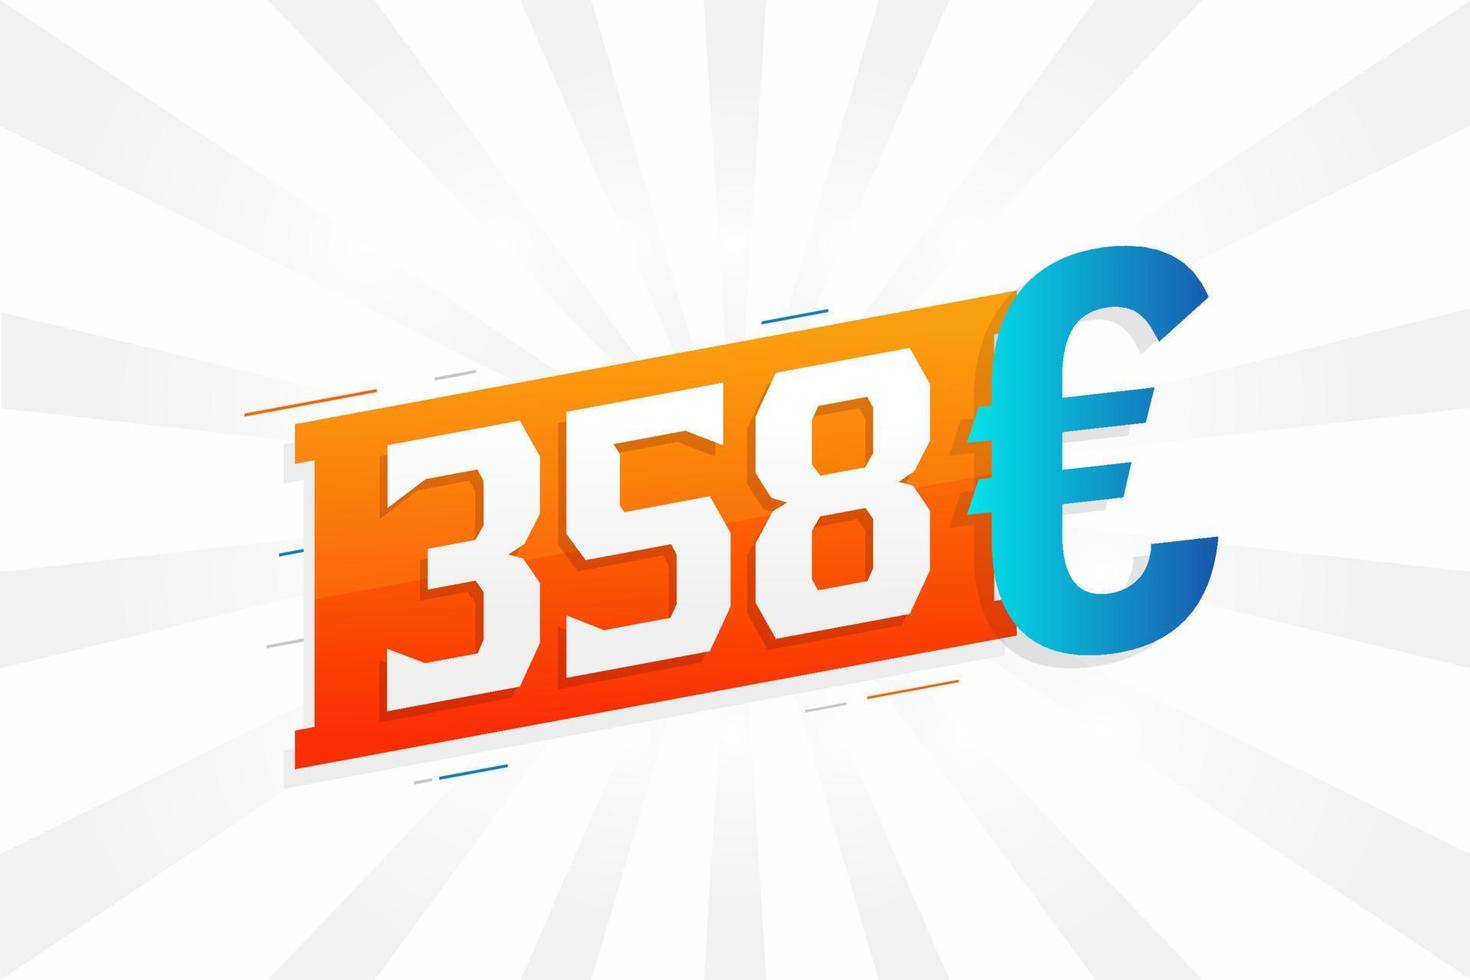 358 Euro Currency vector text symbol. 358 Euro European Union Money stock vector